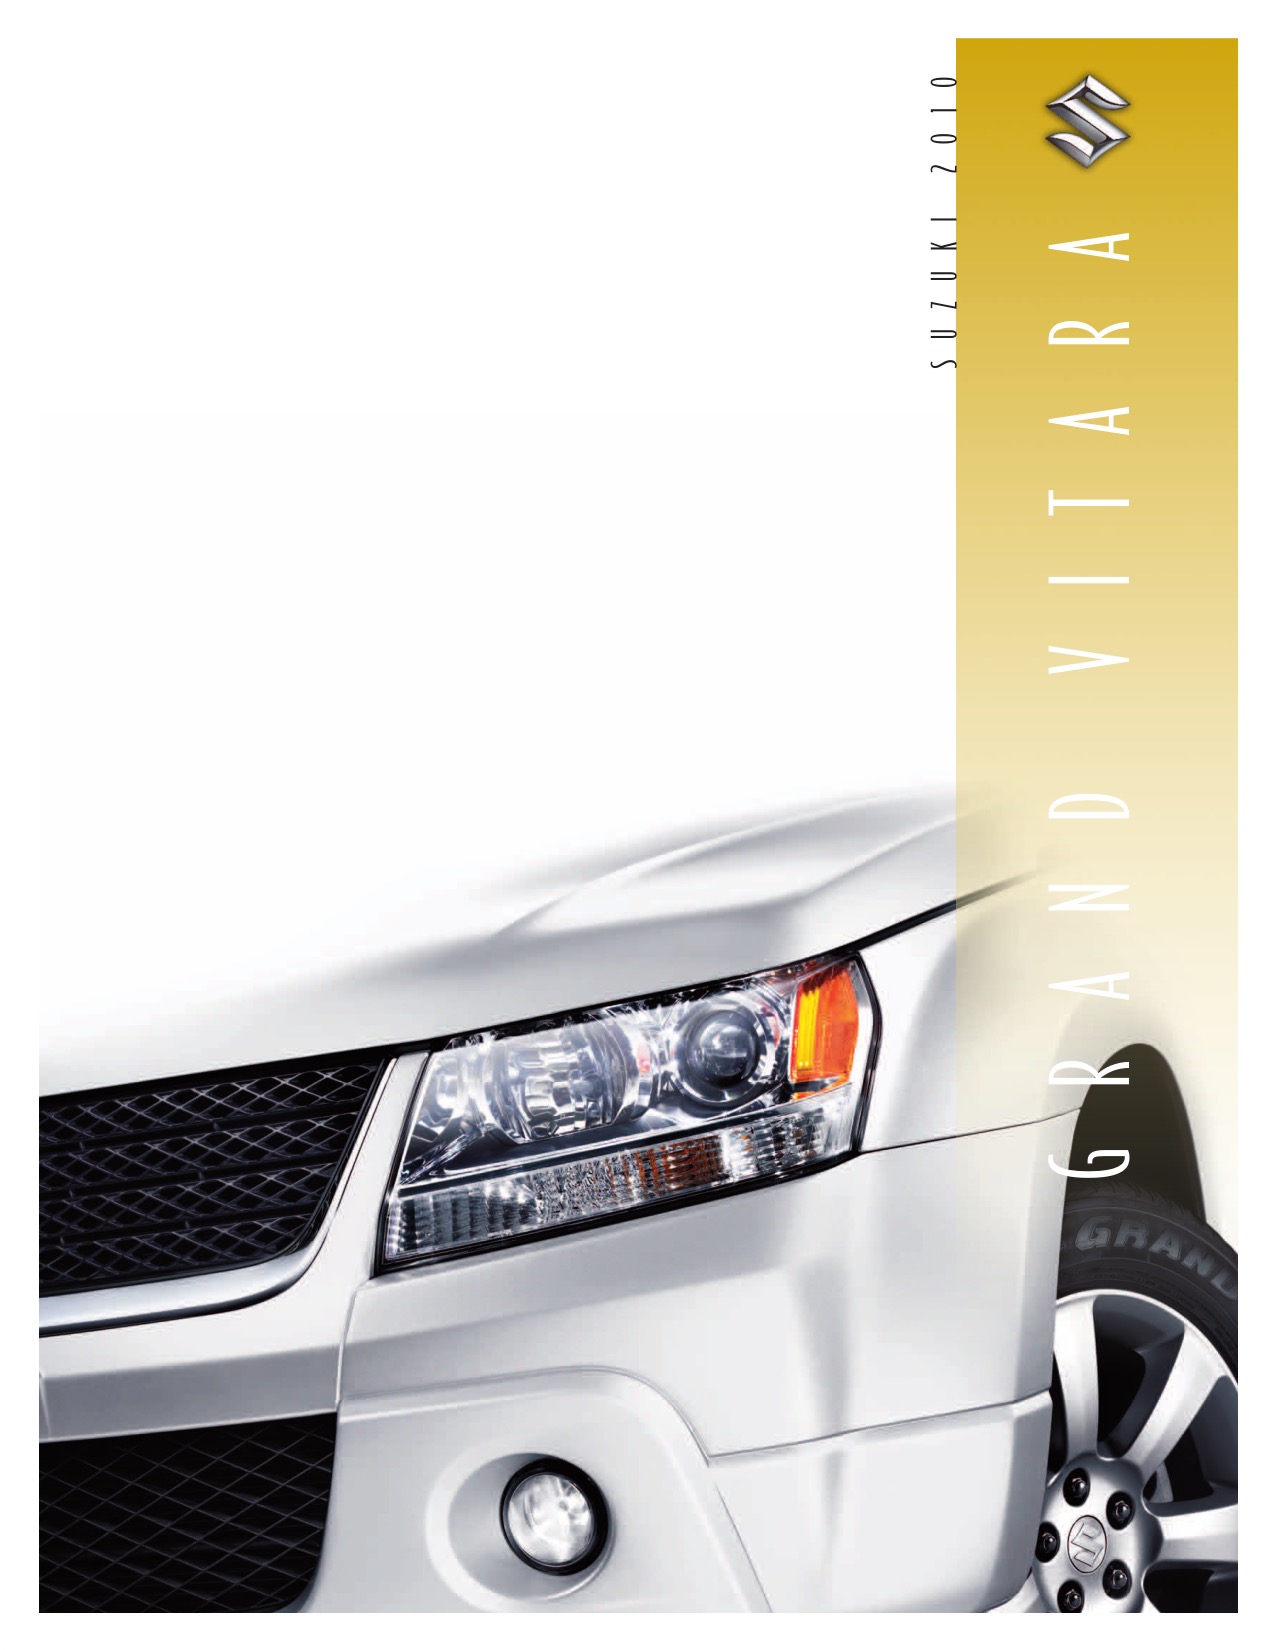 2010 Suzuki Grand Vitara Brochure